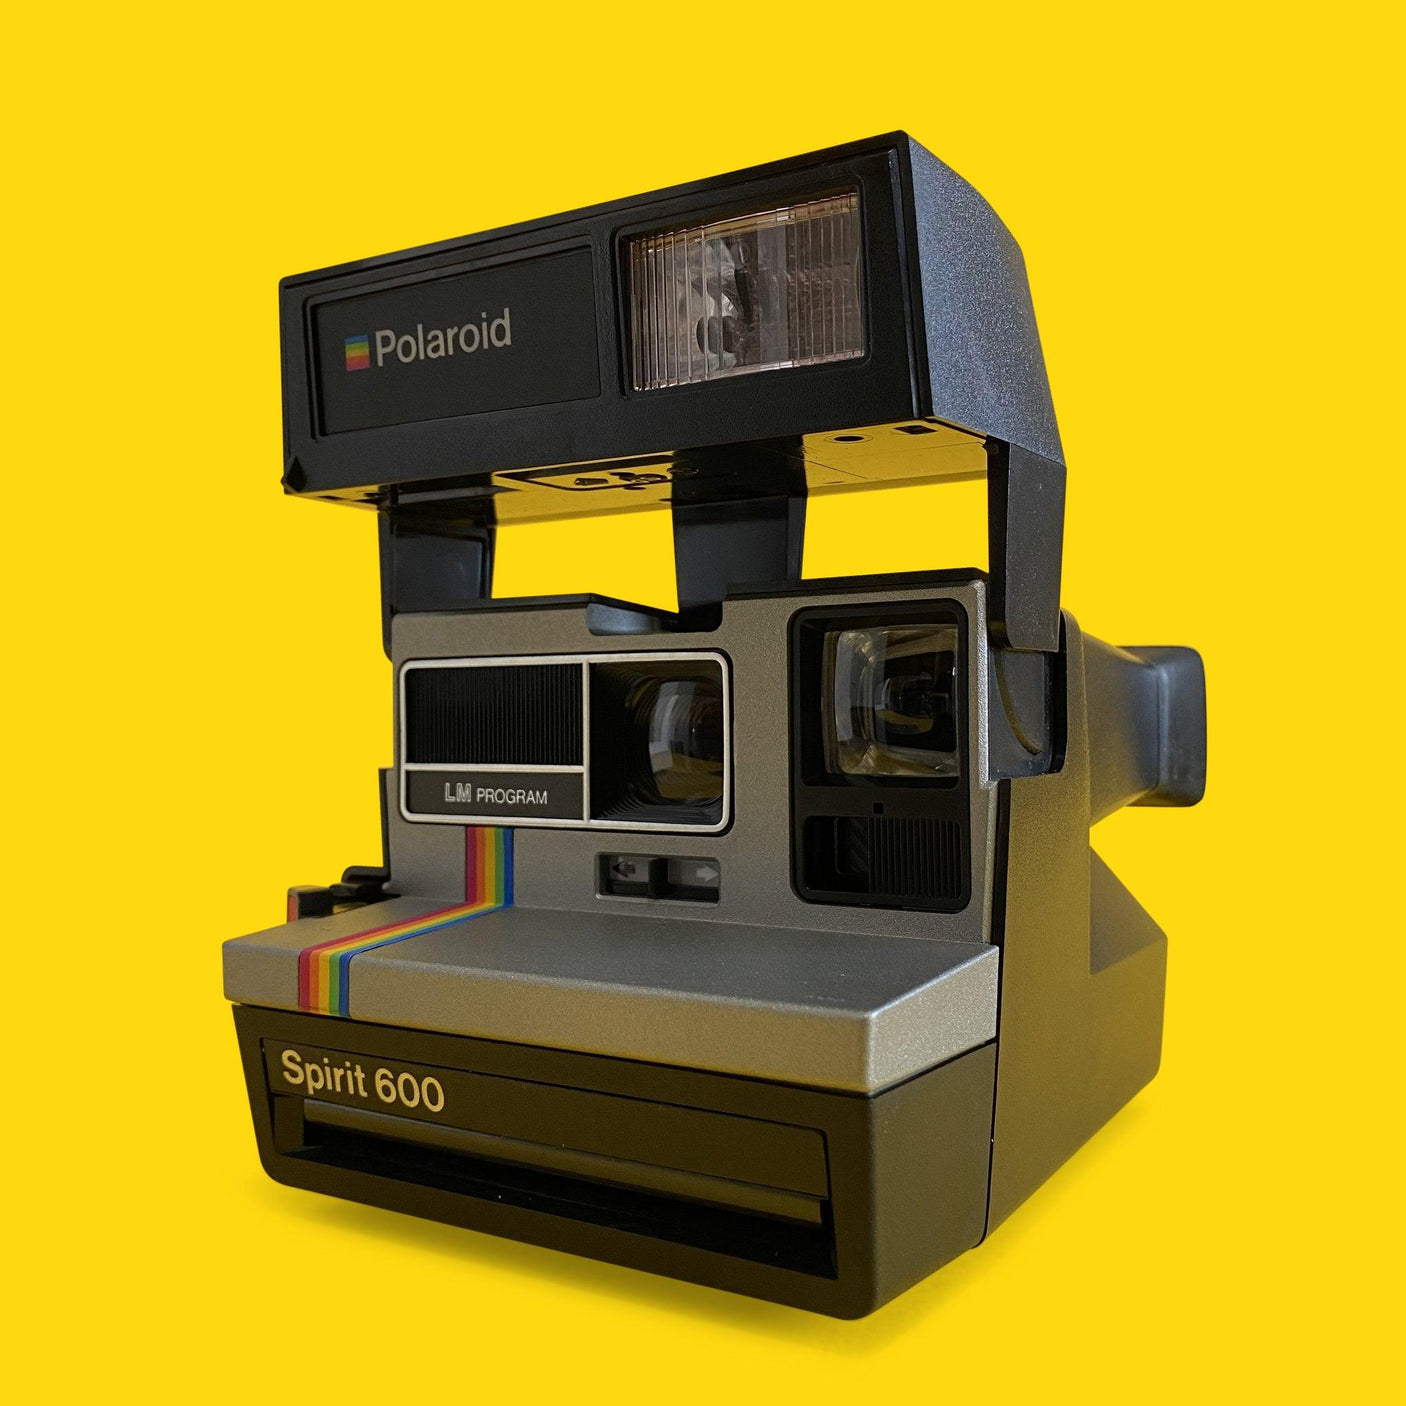 Retro Classic Polaroid Spirit 600 Instant Film Camera